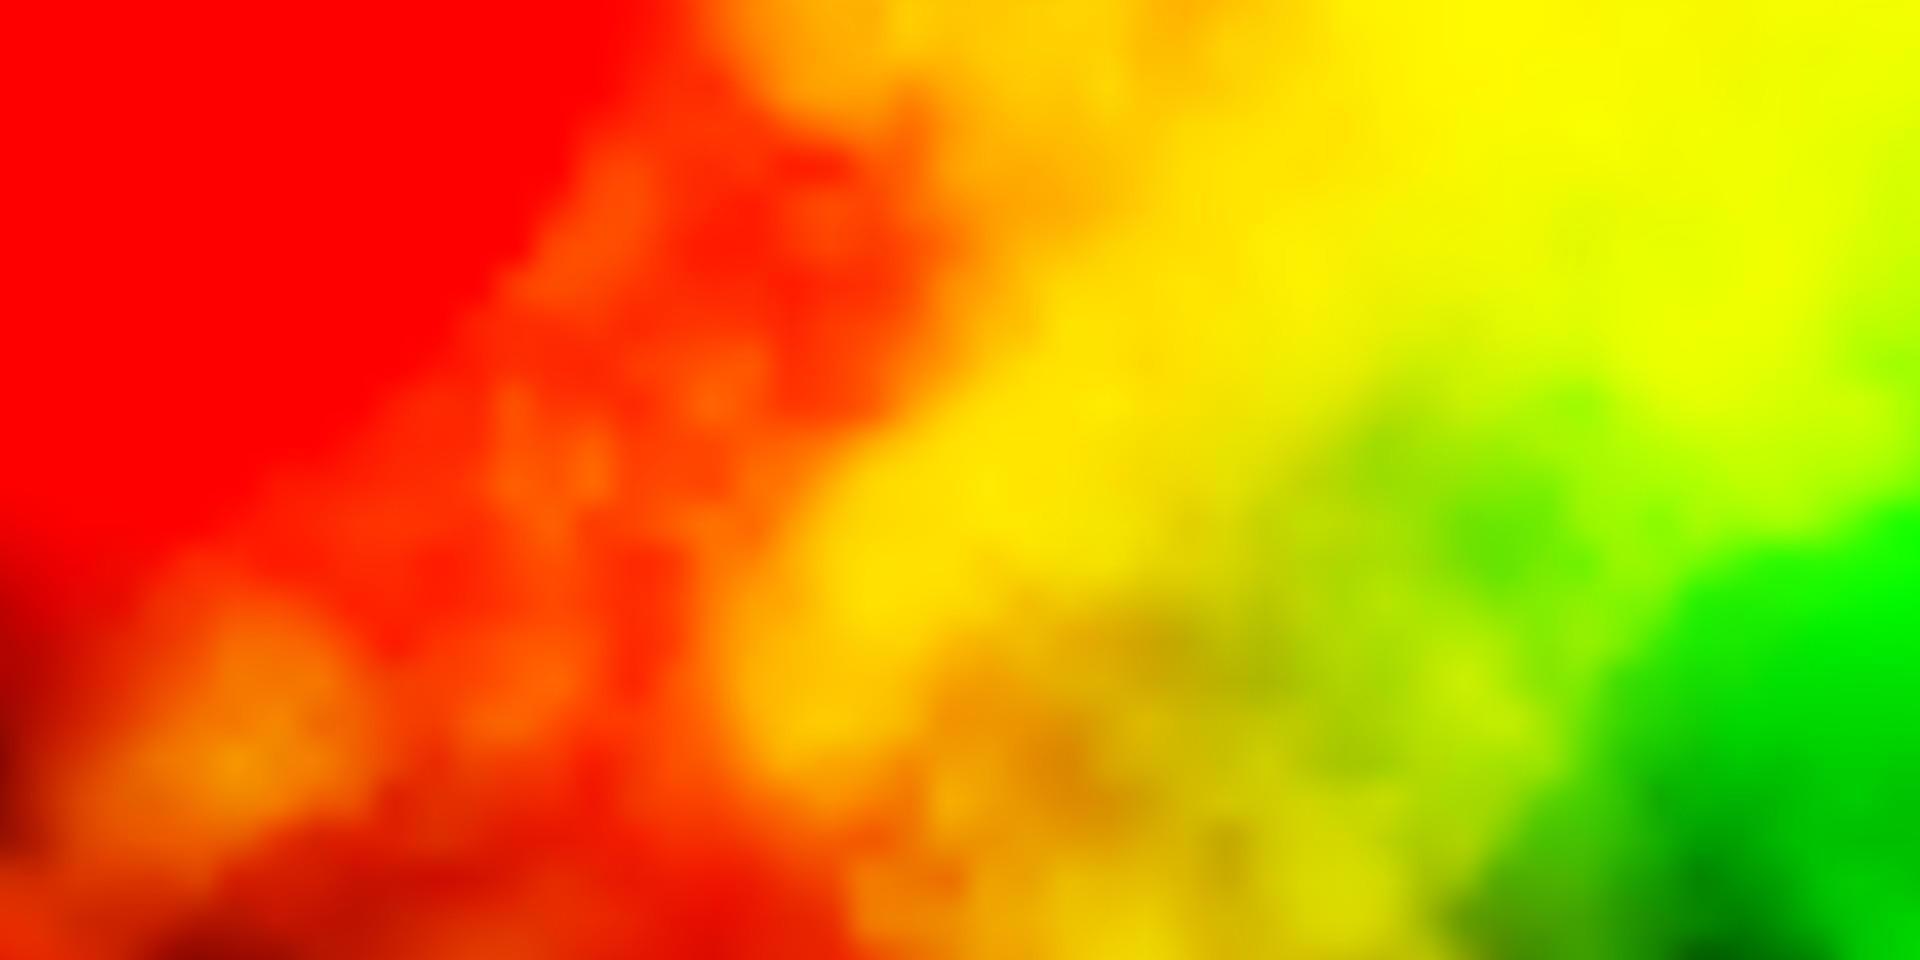 ljusrosa, gul vektorbakgrund med moln. vektor